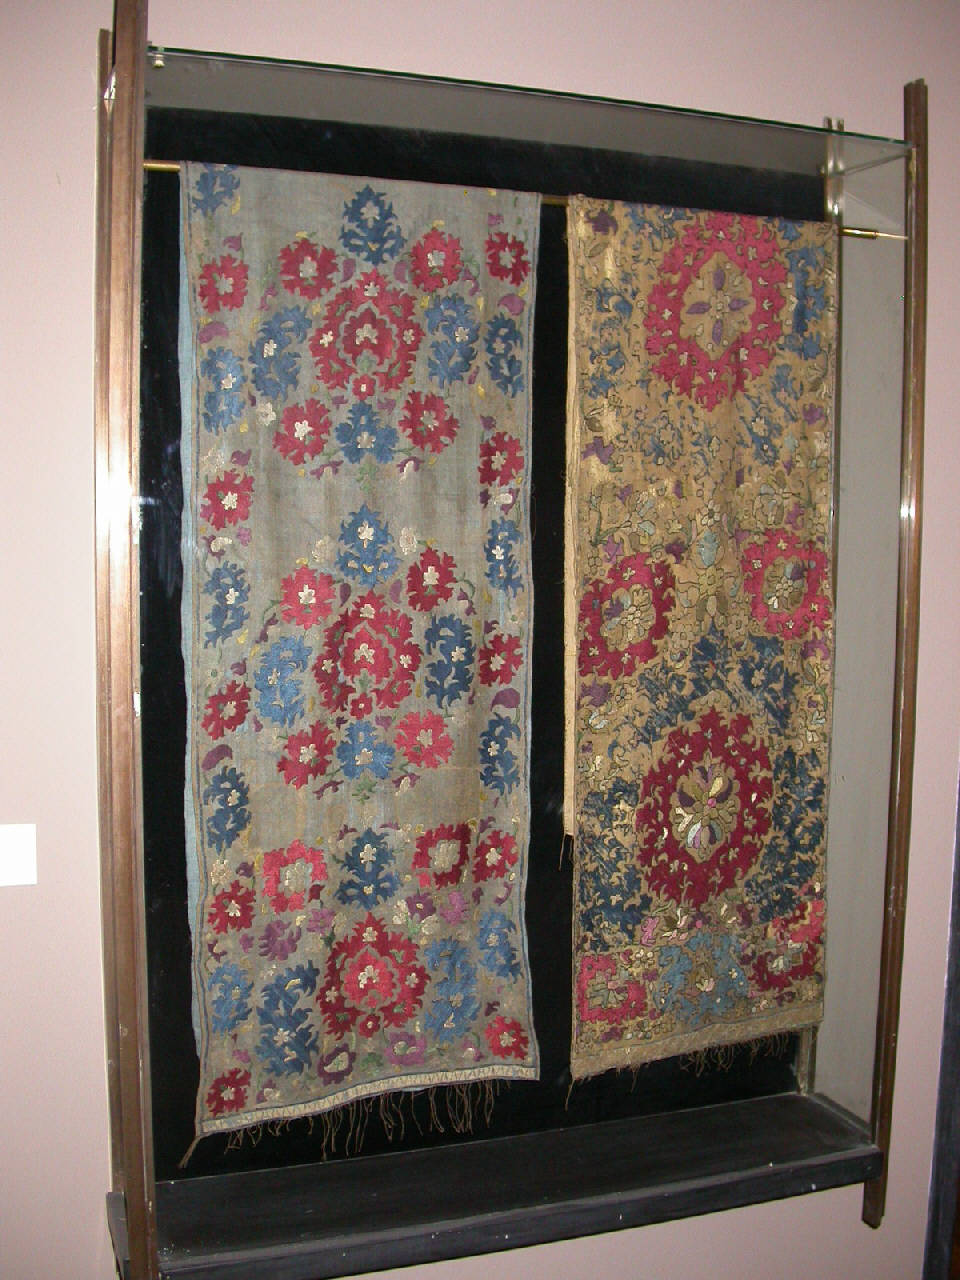 Pannello decorativo ricamato in seta, fiori (pannello) - manifattura algerina, sec. XVIII (sec. XVIII)